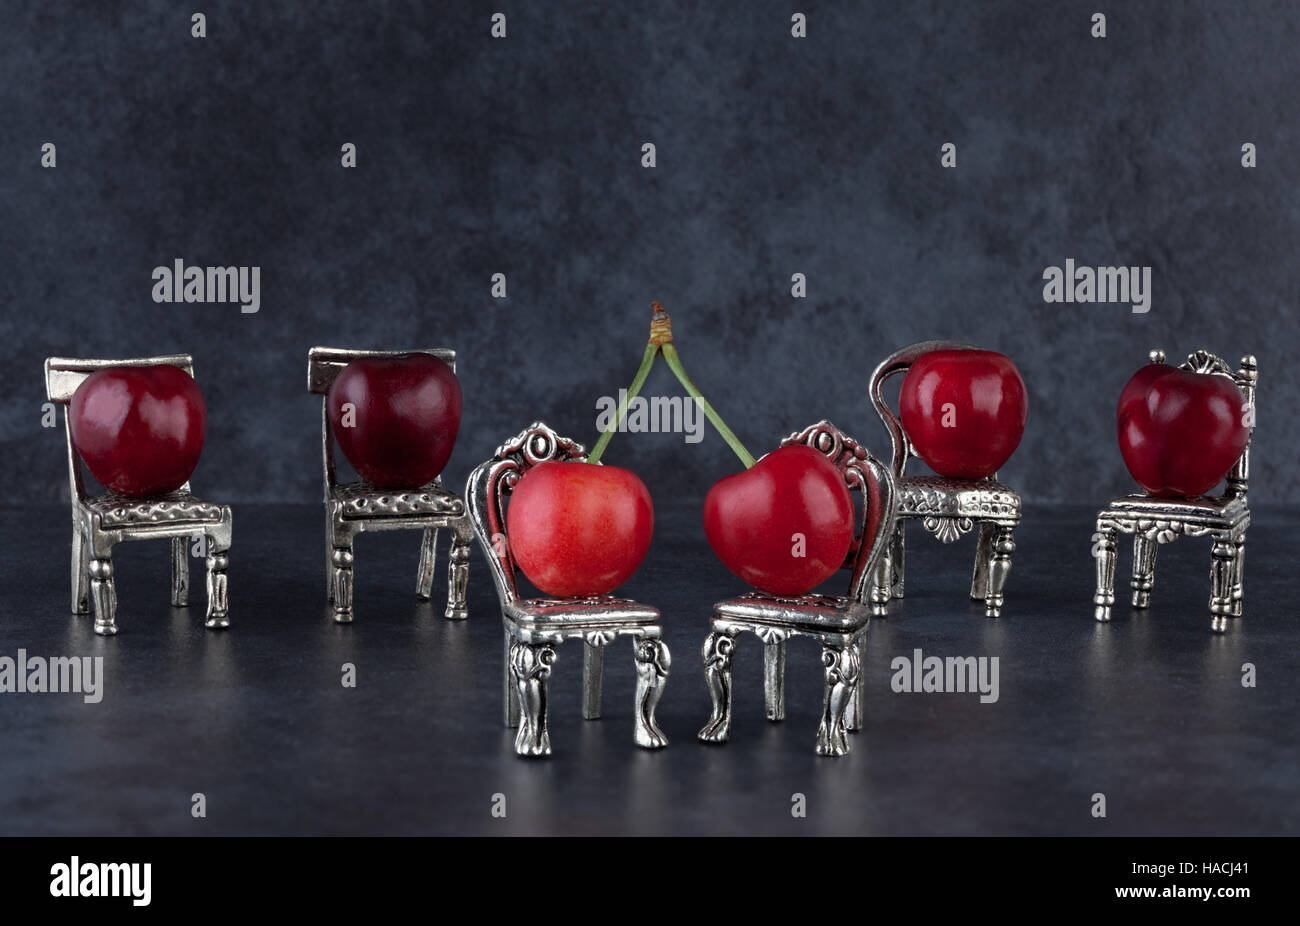 Délicieux rouge cerises mûres sur les petites chaises vintage argent et fond sombre Banque D'Images